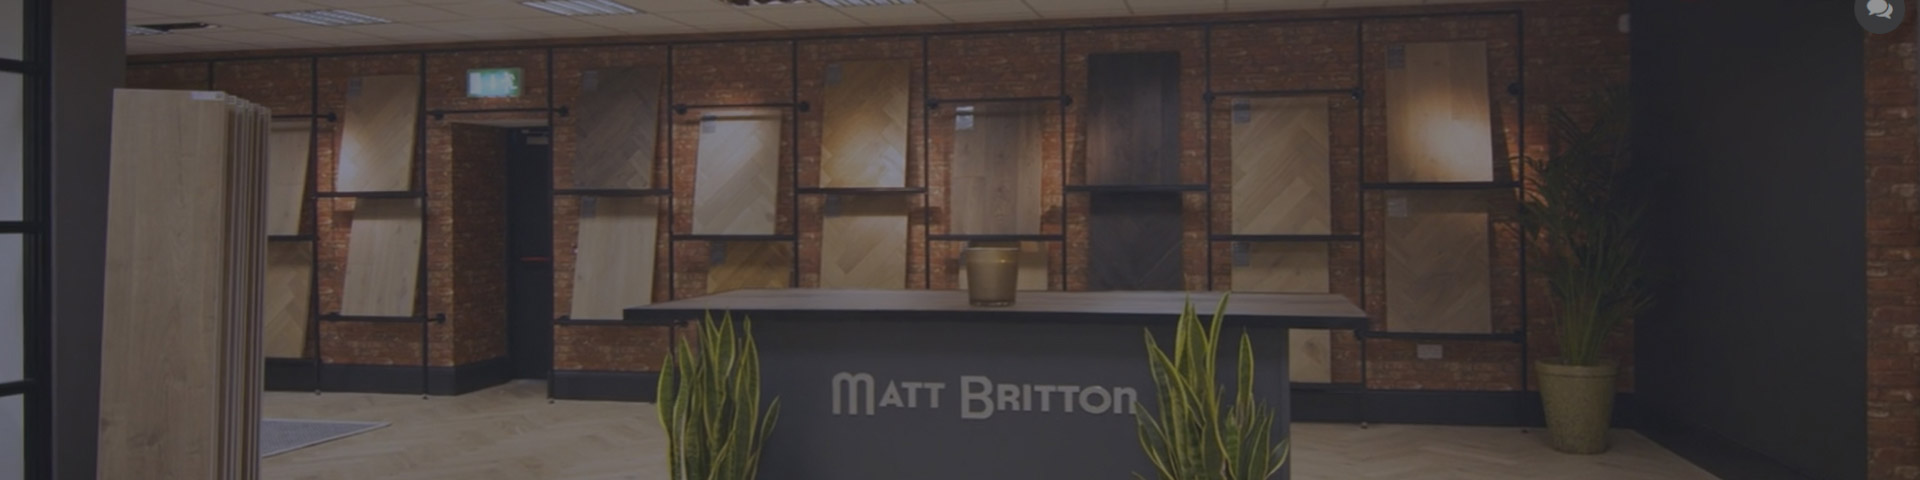 Matt Britton Saloon